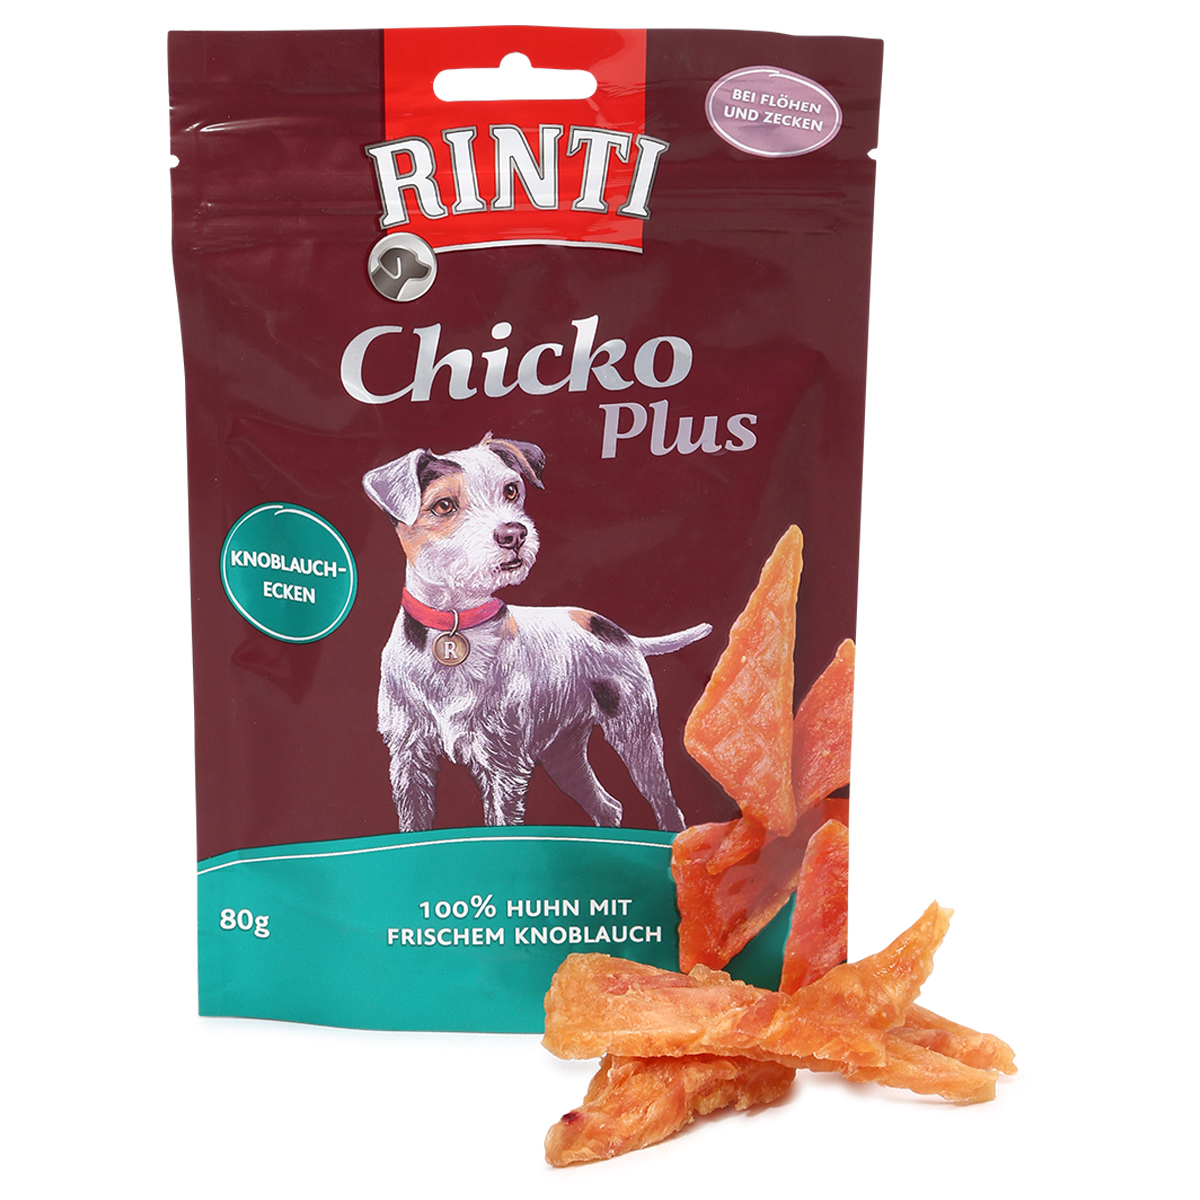 Rinti Extra Chicko Plus česnekové trojhránky 80 g